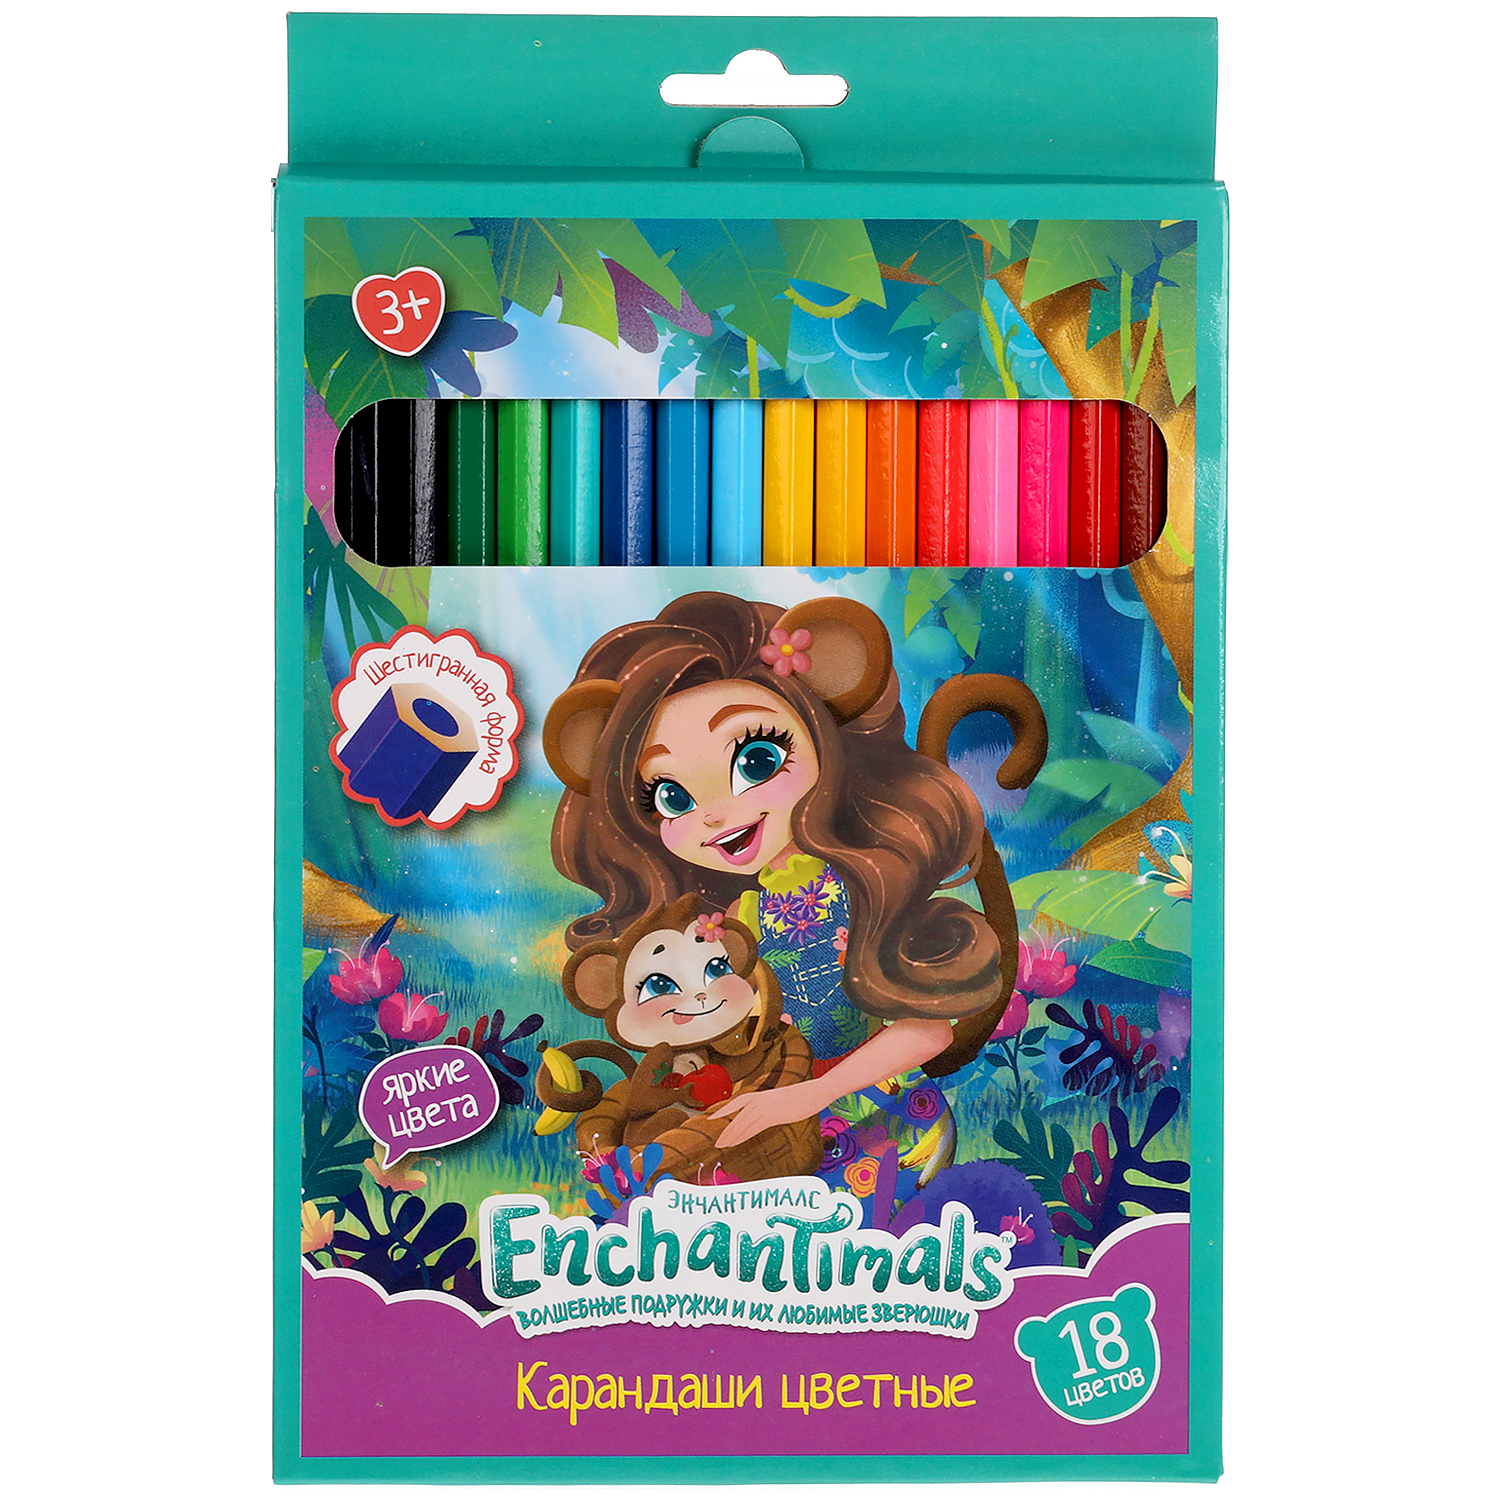 Цветные карандаши Умка Enchantimals 18 цветов шестигранные 313751 - фото 1